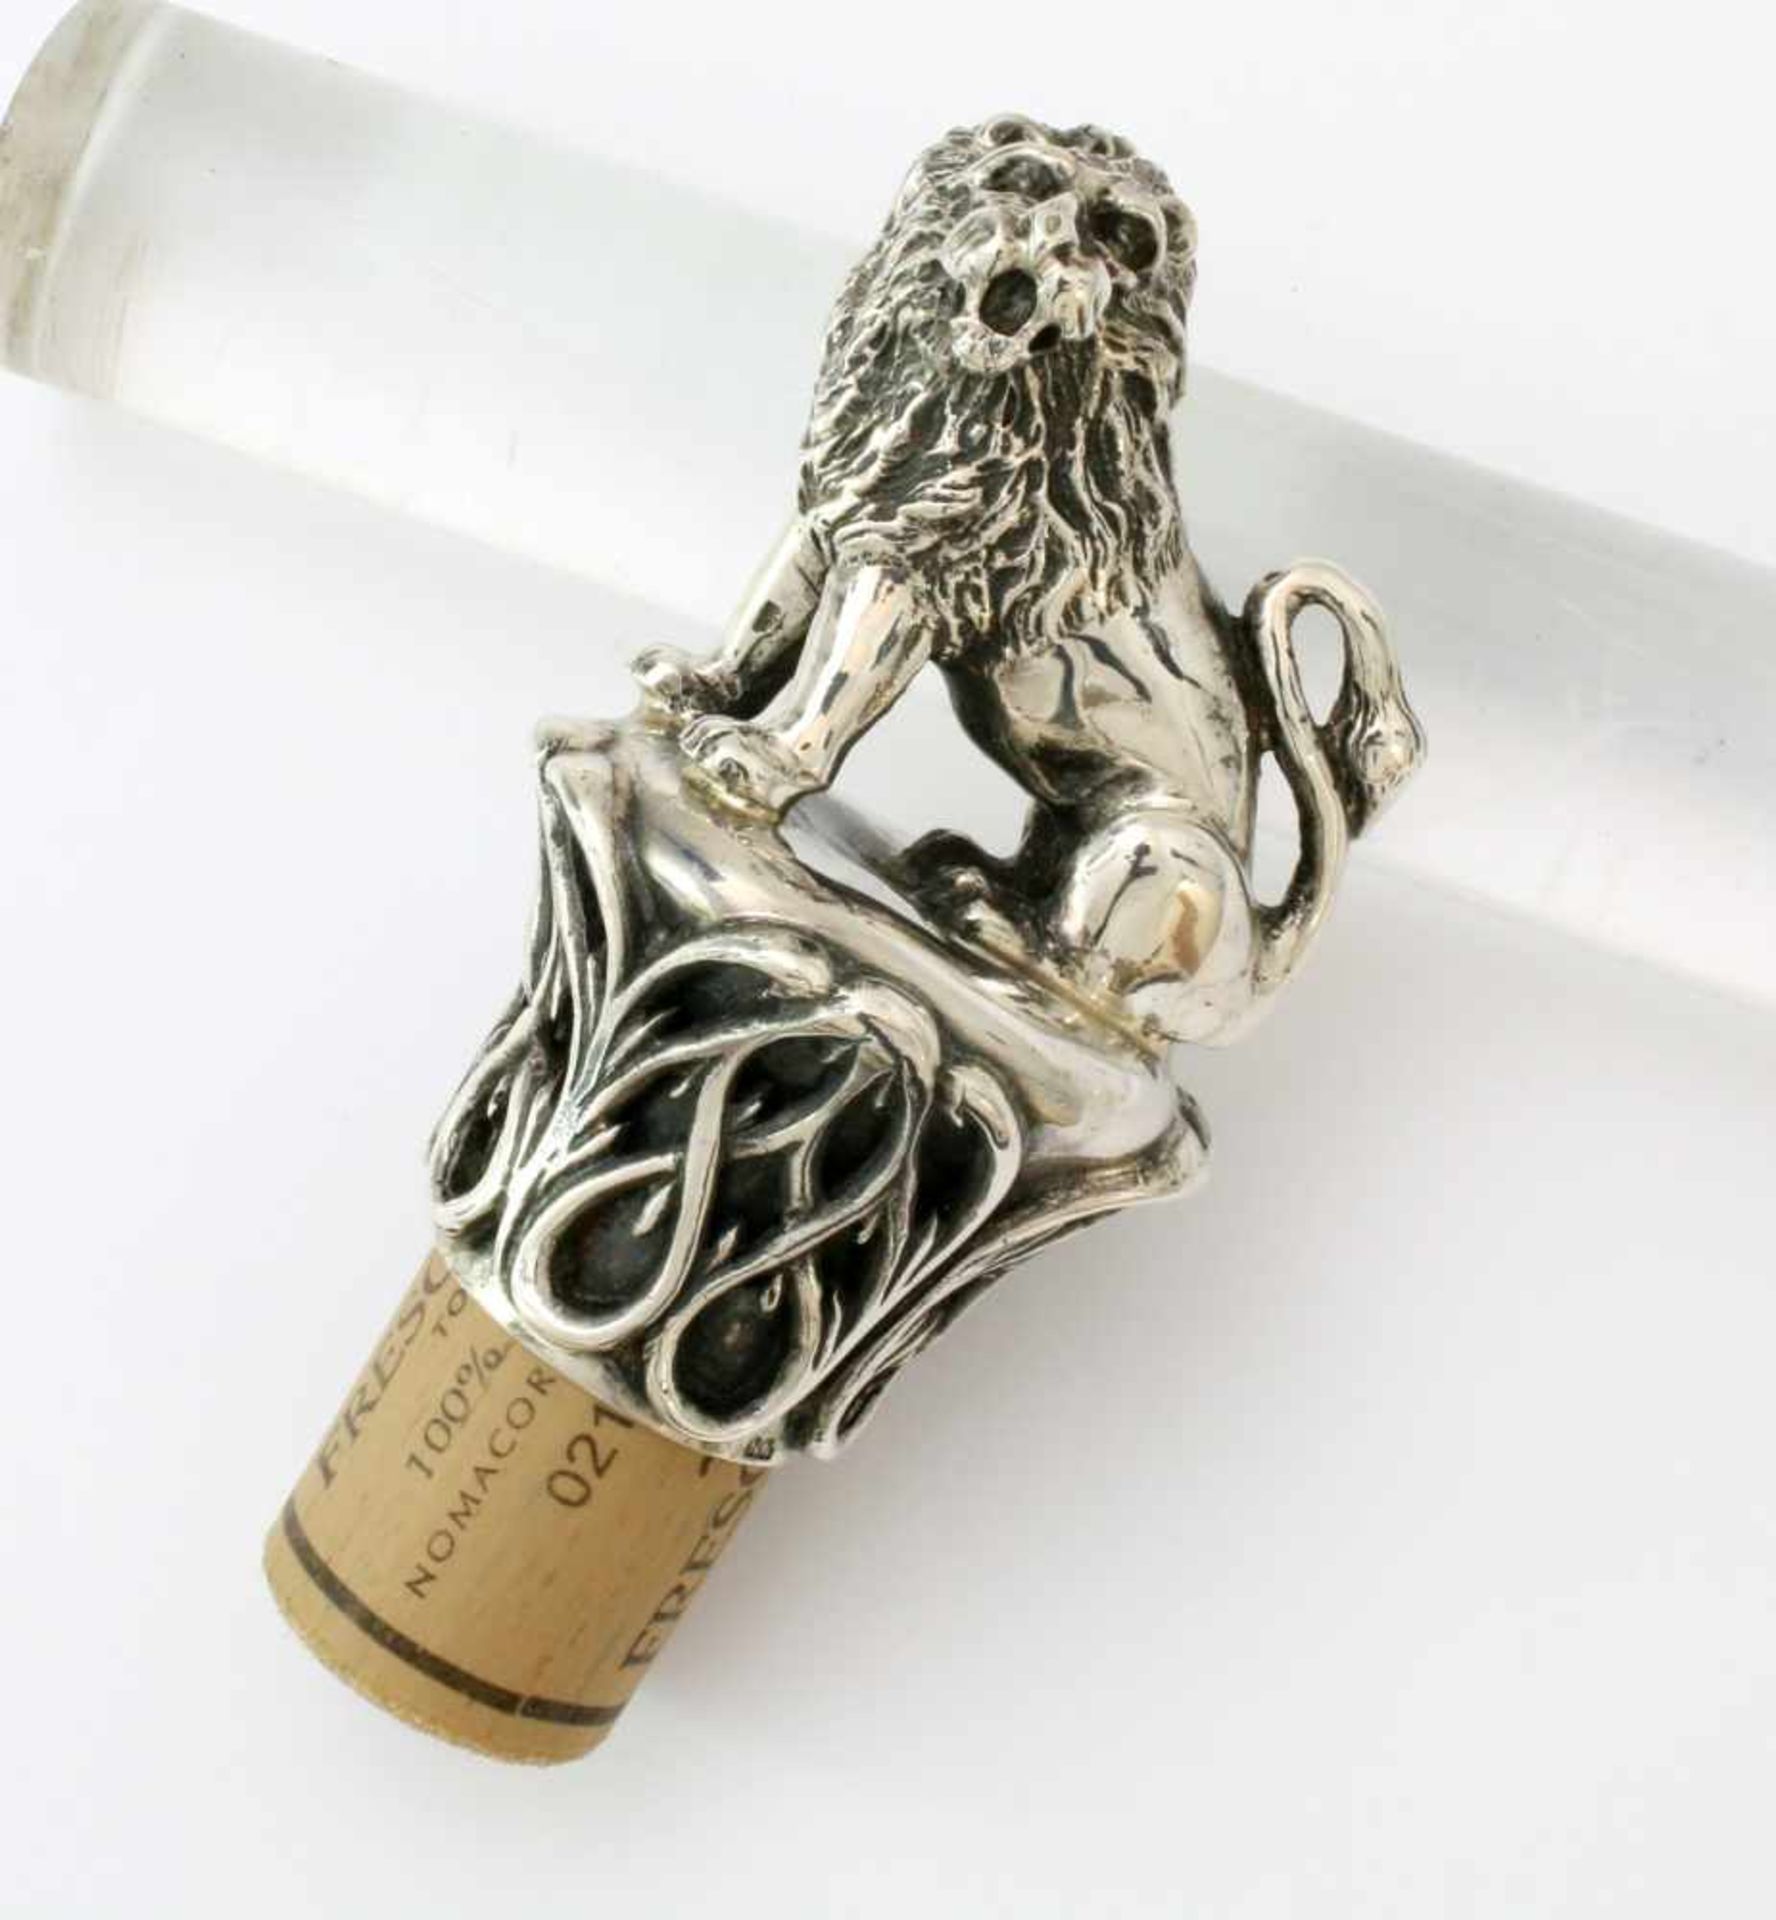 Silberner Flaschenverschluss mit vollplastischem Löwen - um 1900 Silber 800 gest., 2 weitere,